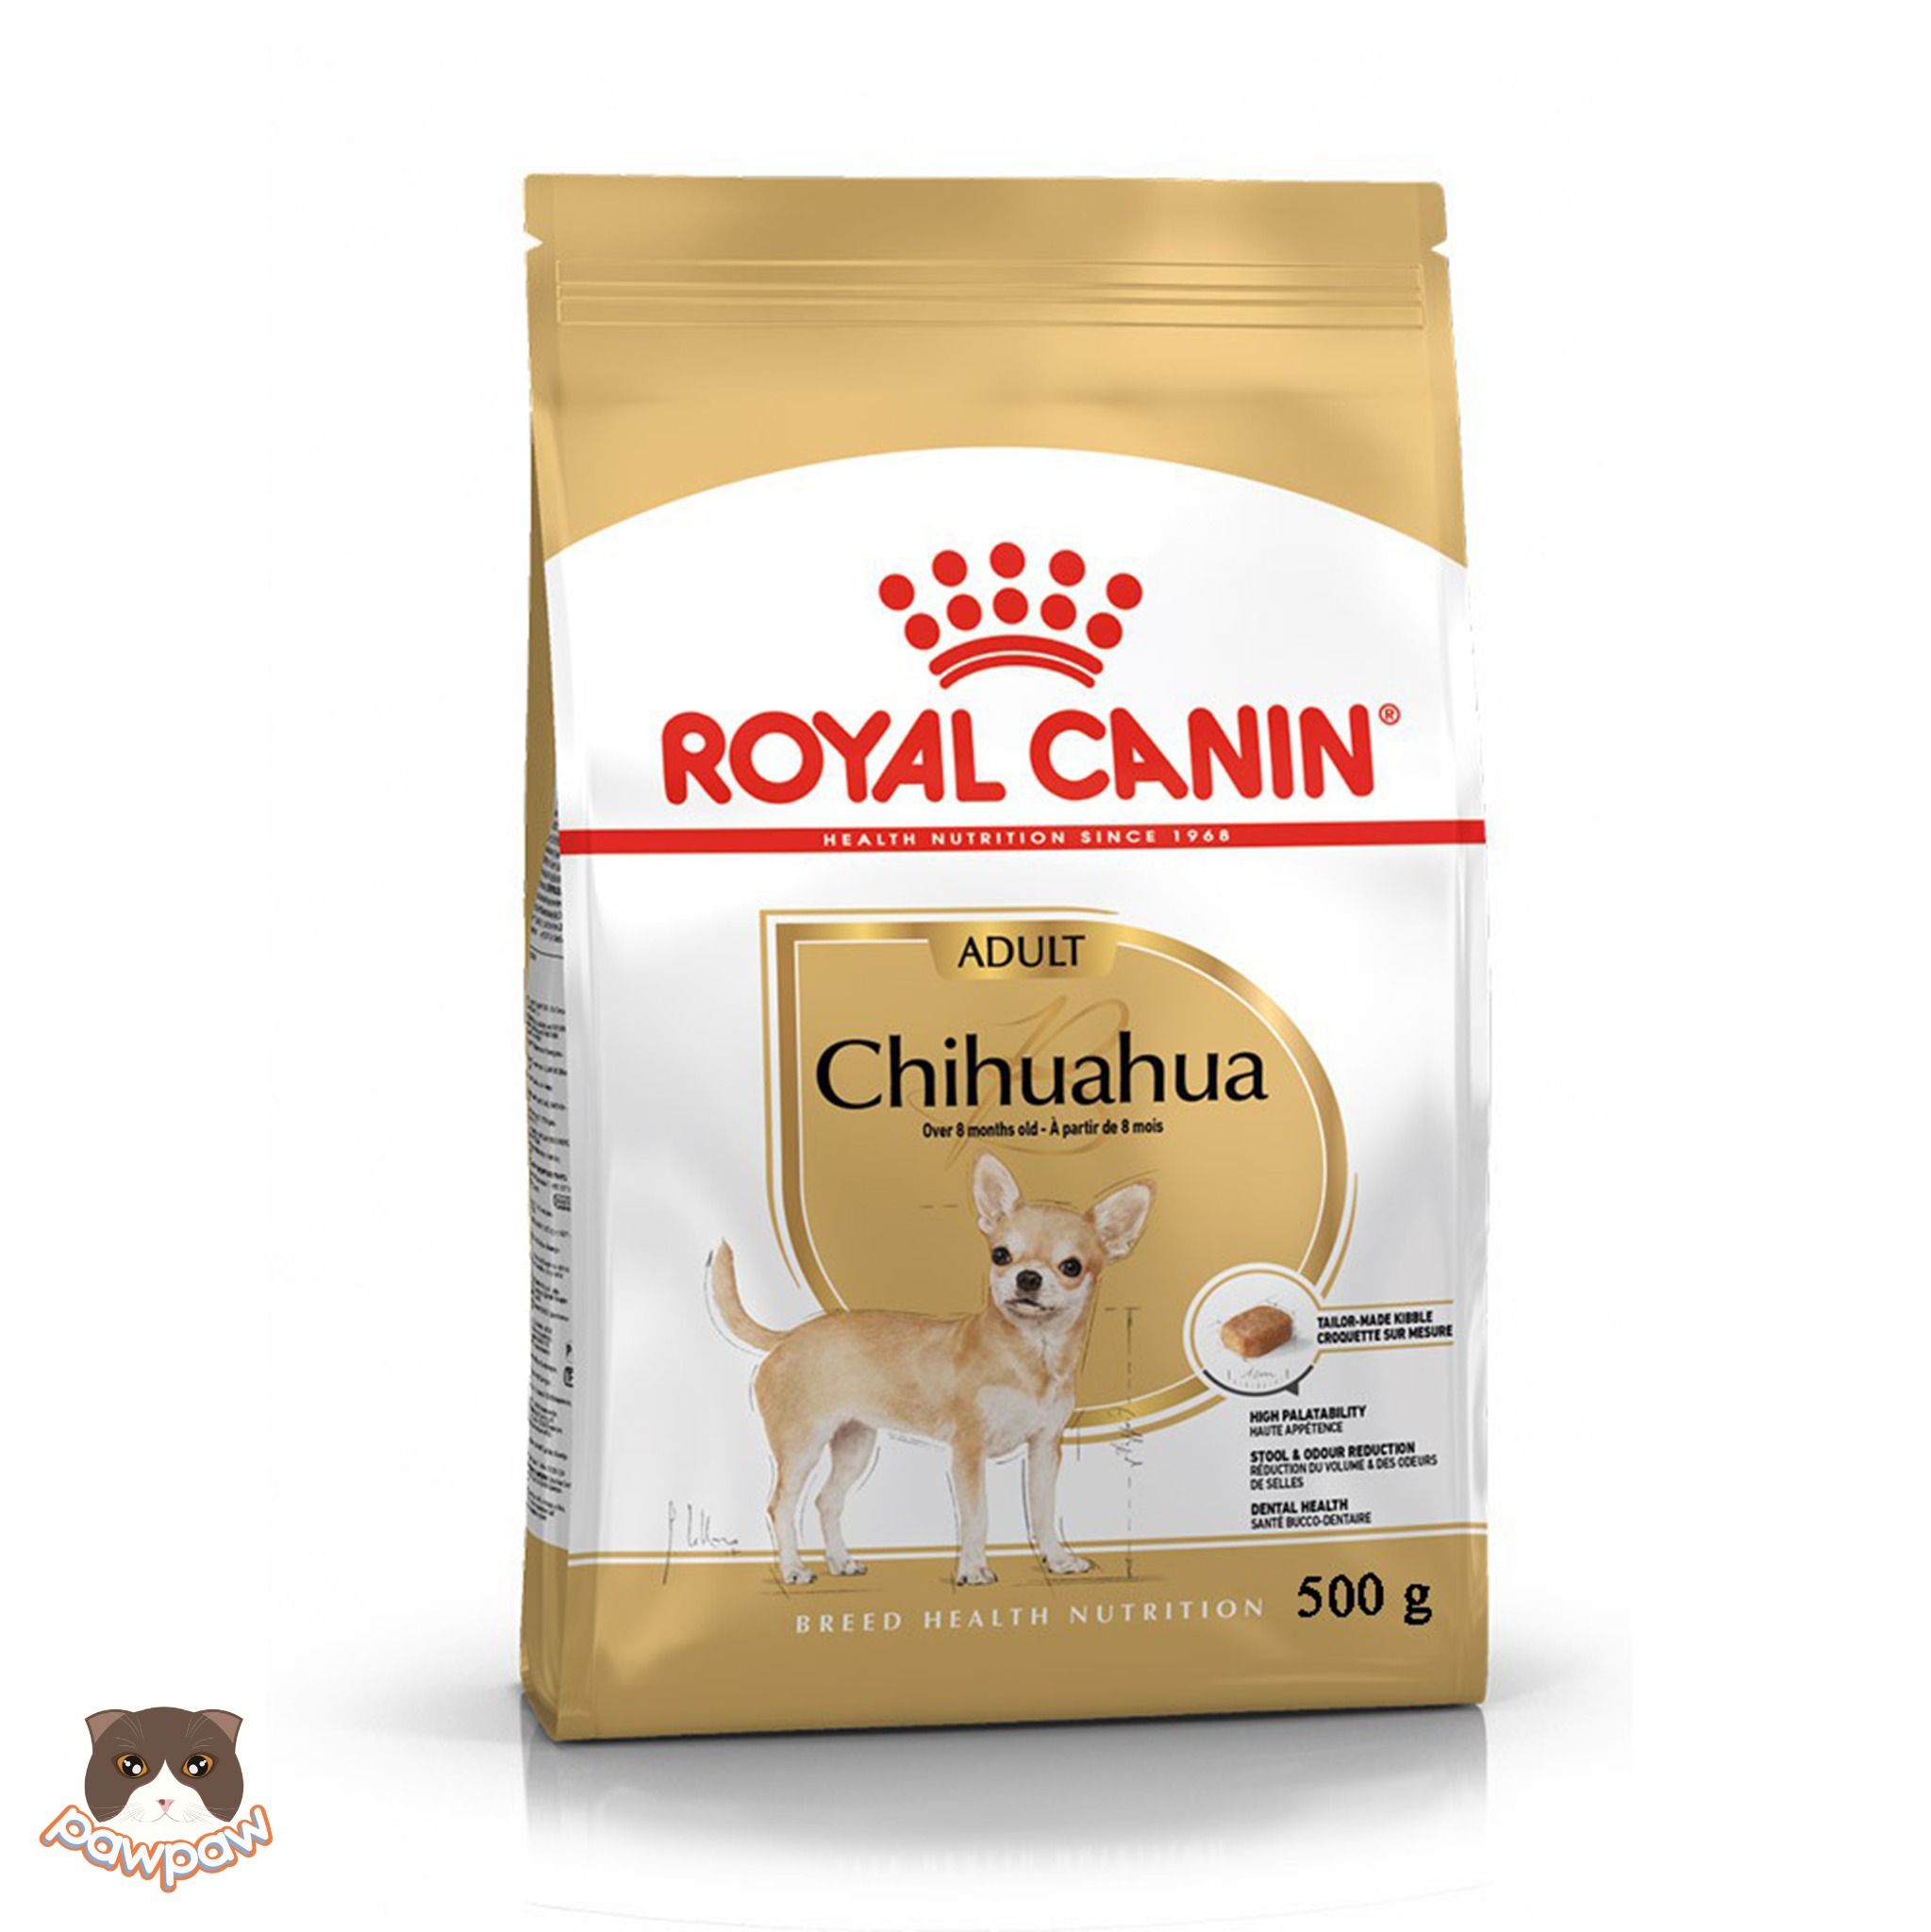  Hạt Royal Canin Chihuahua Adult cho chó trưởng thành 